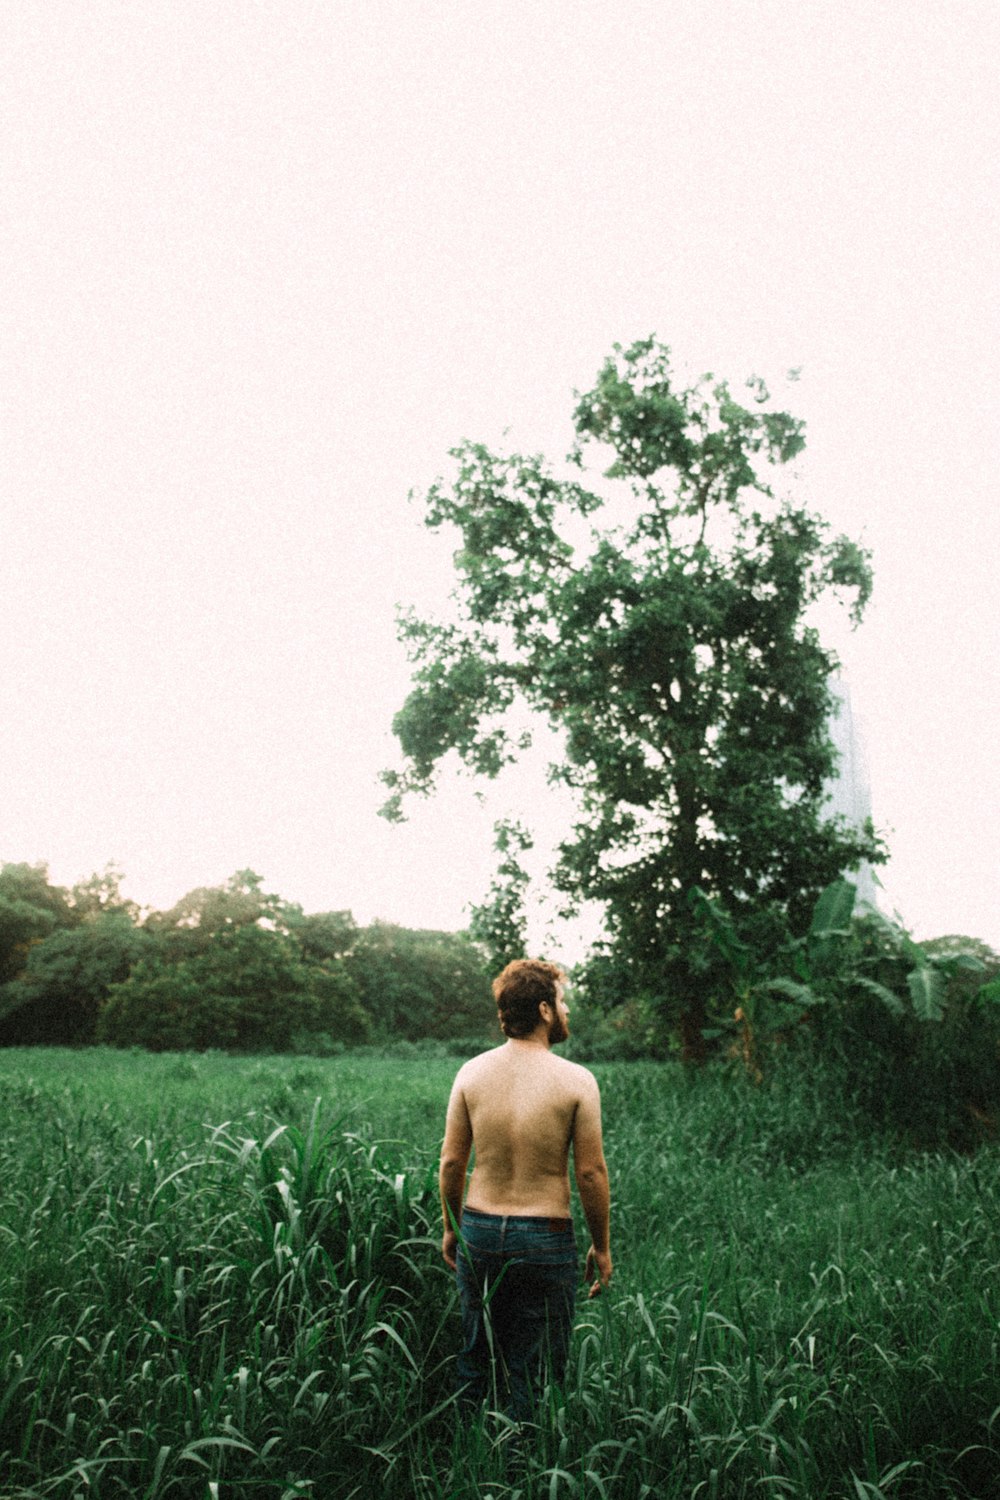 topless man standing near grass field during daytime